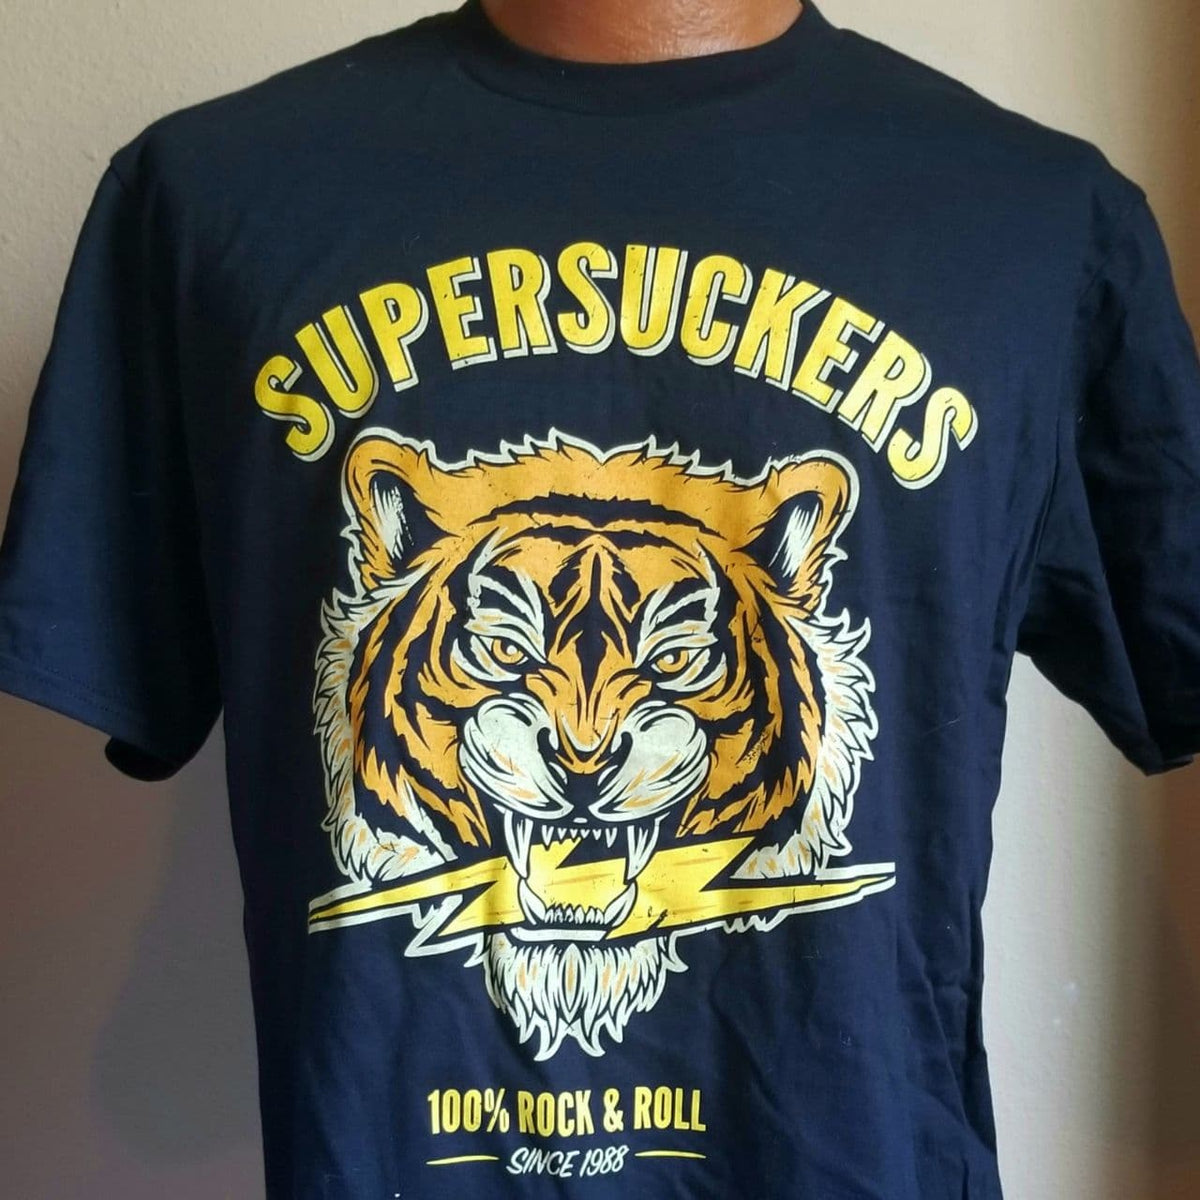 Camiseta Survivor eye of the tiger rock clássico anos 80 no Shoptime